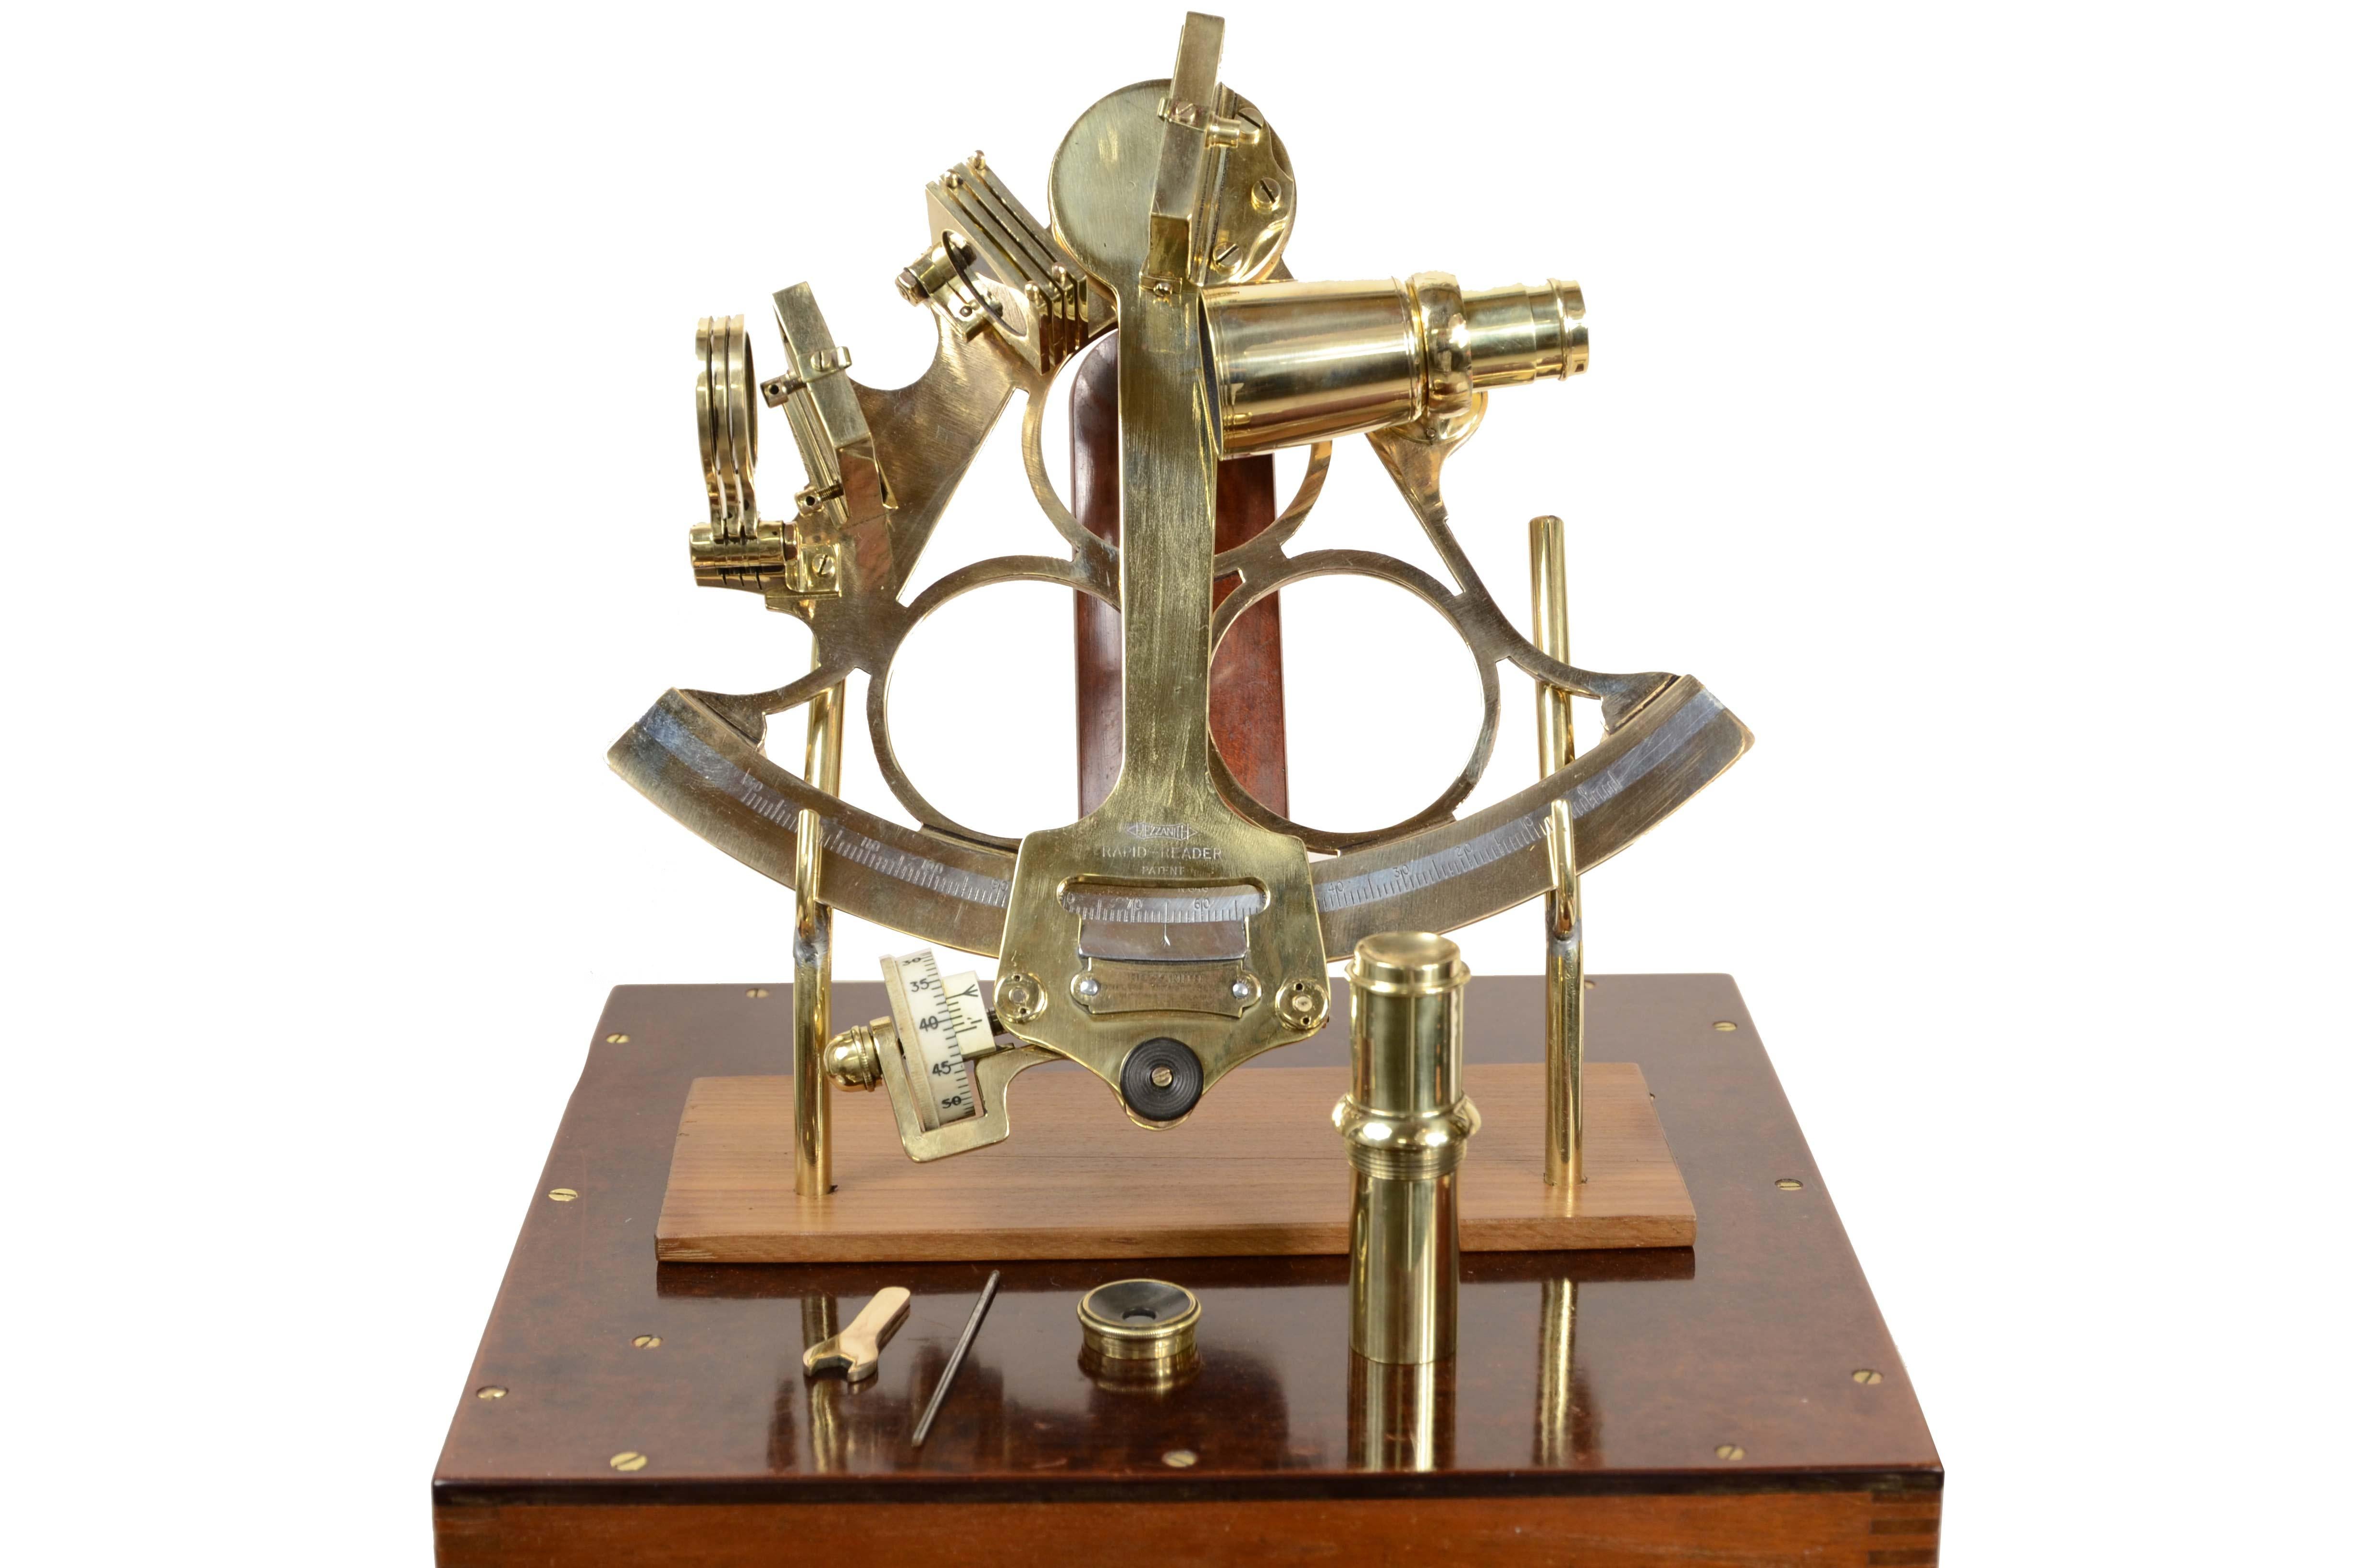 Sestante in ottone firmato HEATH & C Ltd New Heltham London azienda costruttrice di strumenti scientifici fondata nel 1845  e attiva fino al 1937.
Modello  HEZZANITH Endlos-Schnellleser Automatische Klemme Patent  dei primi del '900.
Lo strumento è